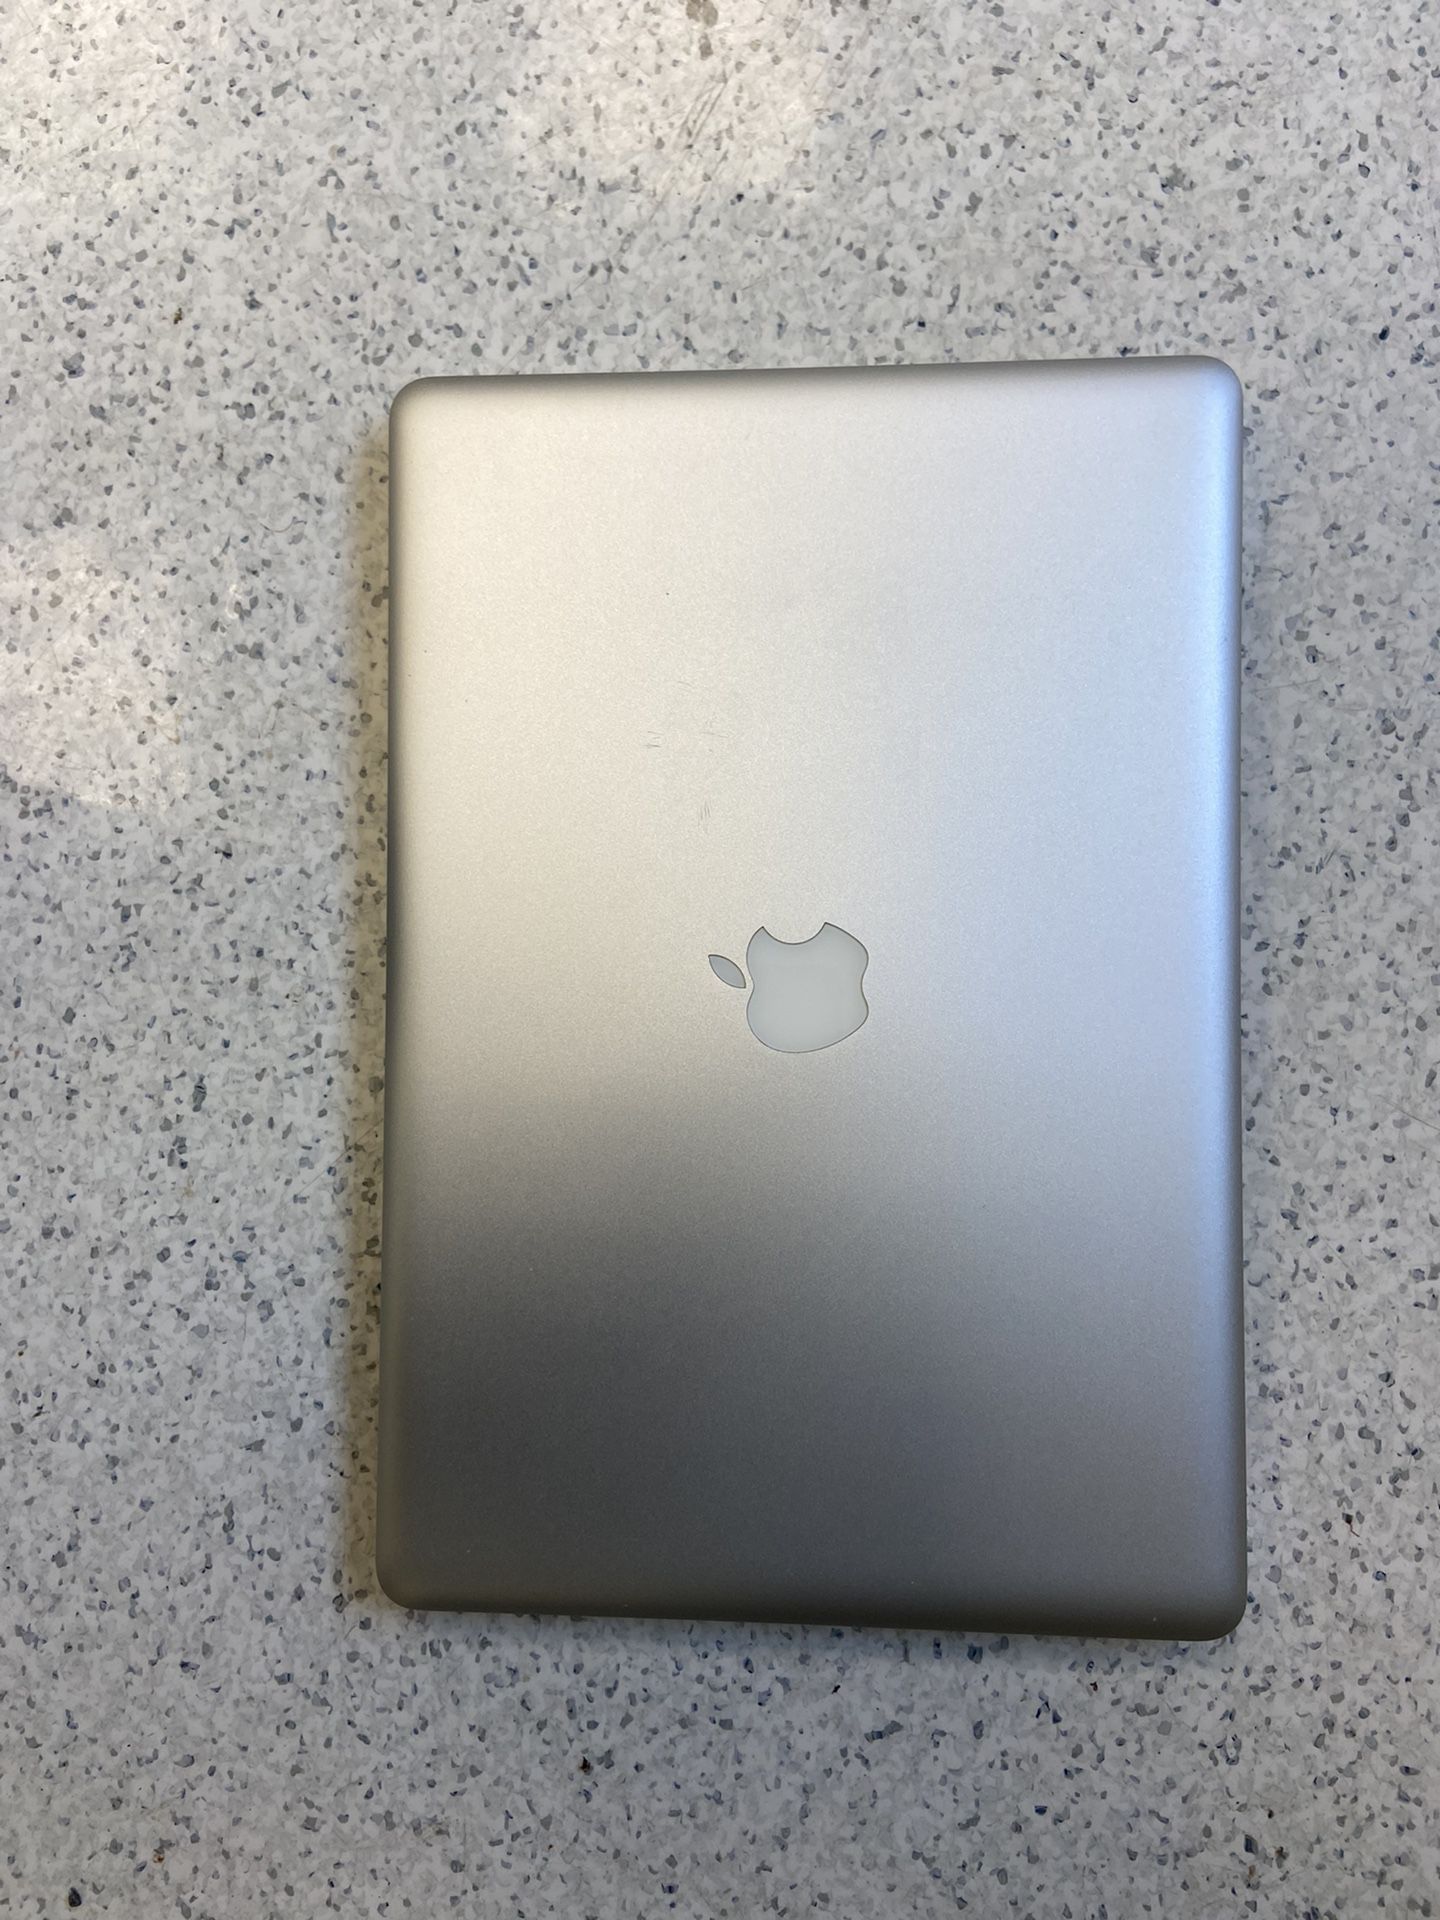 2011 MacBook Pro 15 Inch